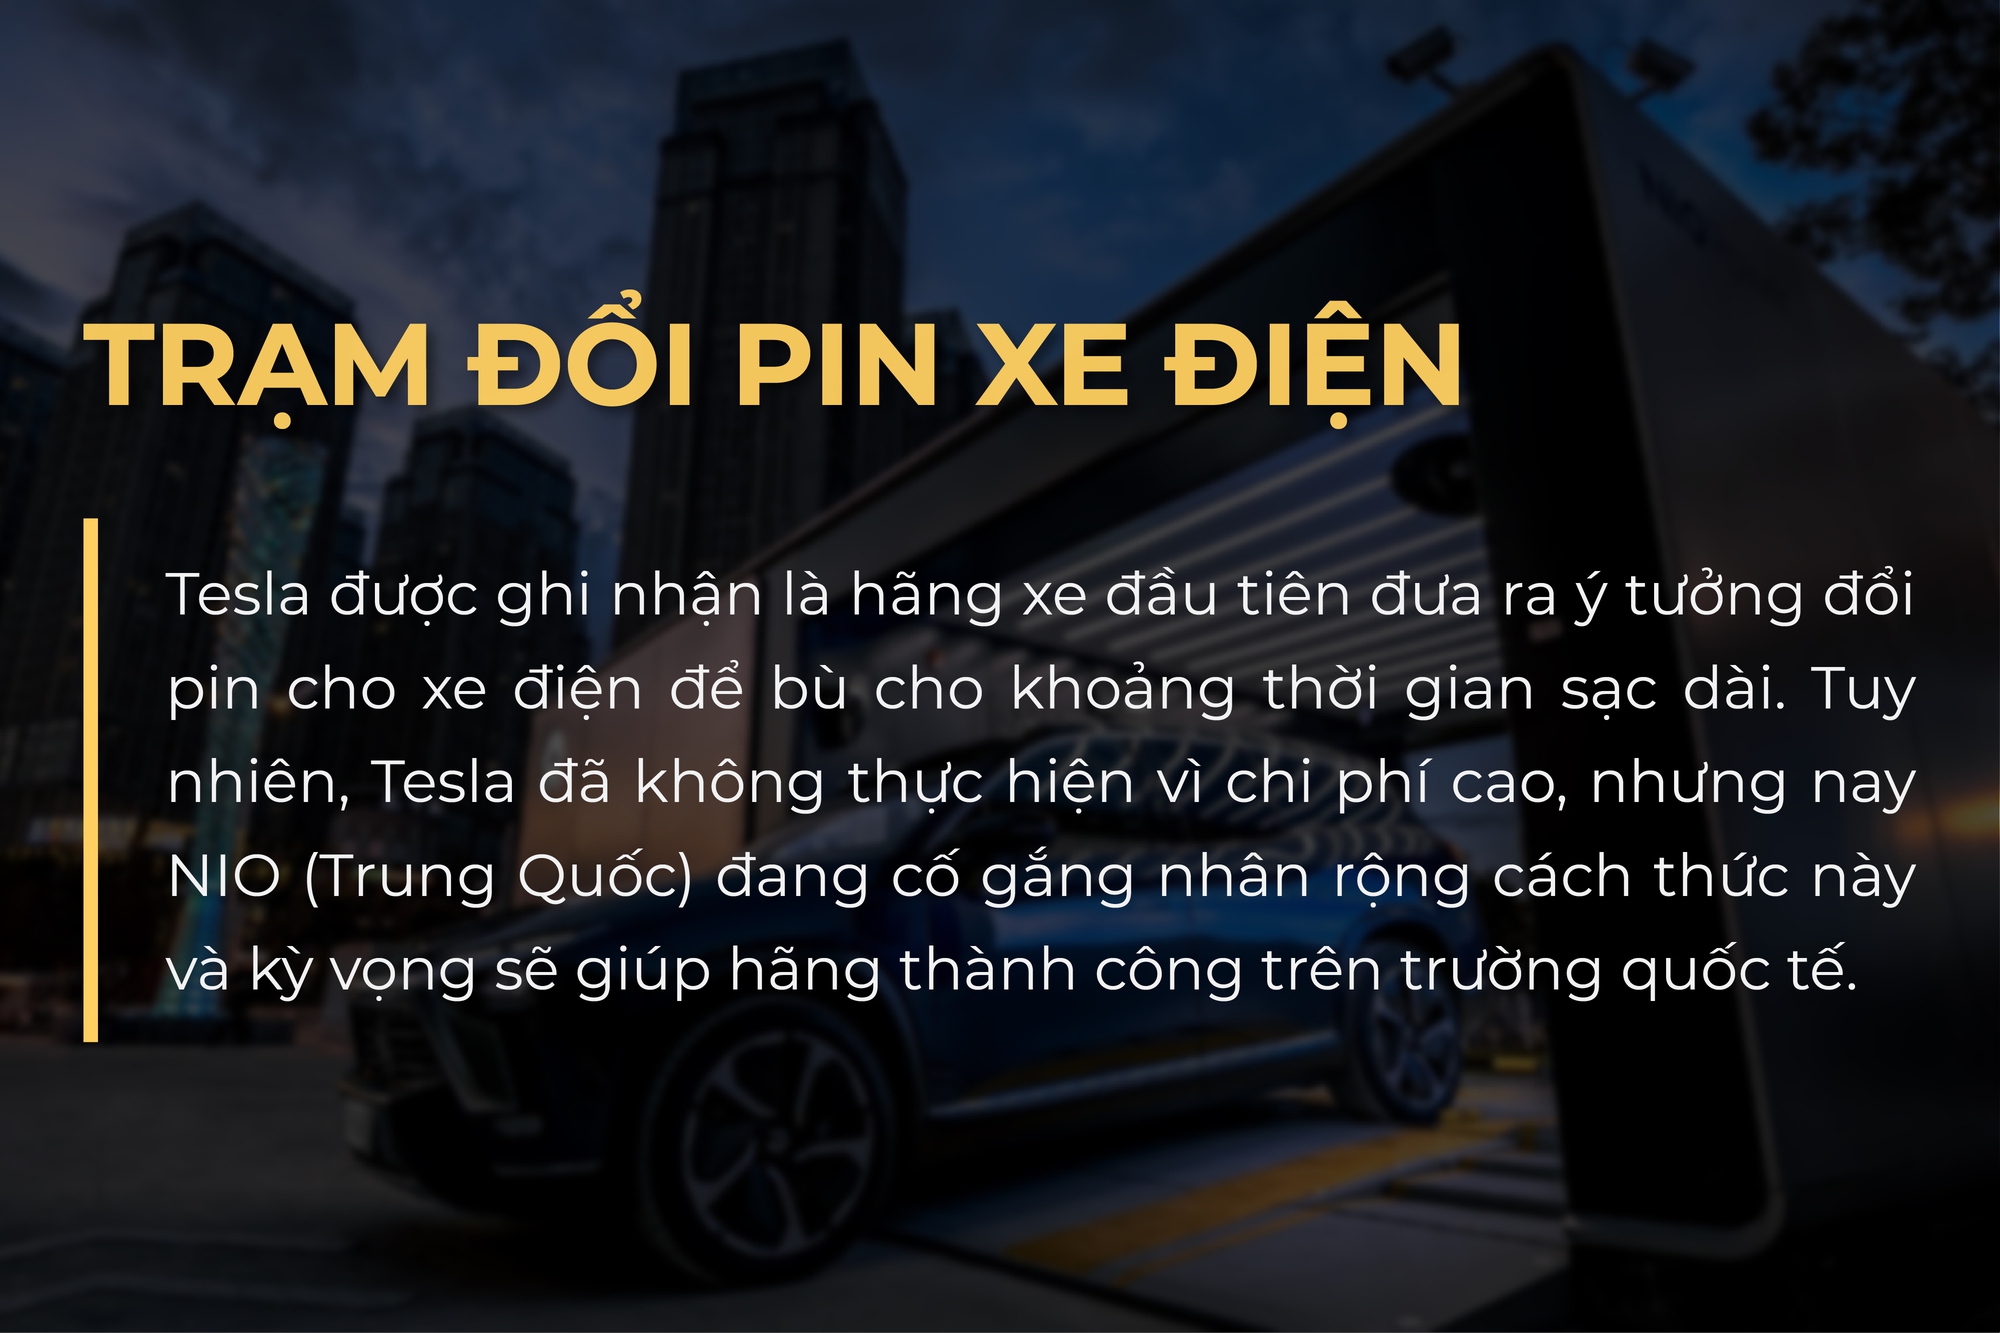 Hãng xe điện tí hon từ Trung Quốc quyết đấu BMW, Mercedes bằng cho thuê pin, trạm đổi pin - Ảnh 8.